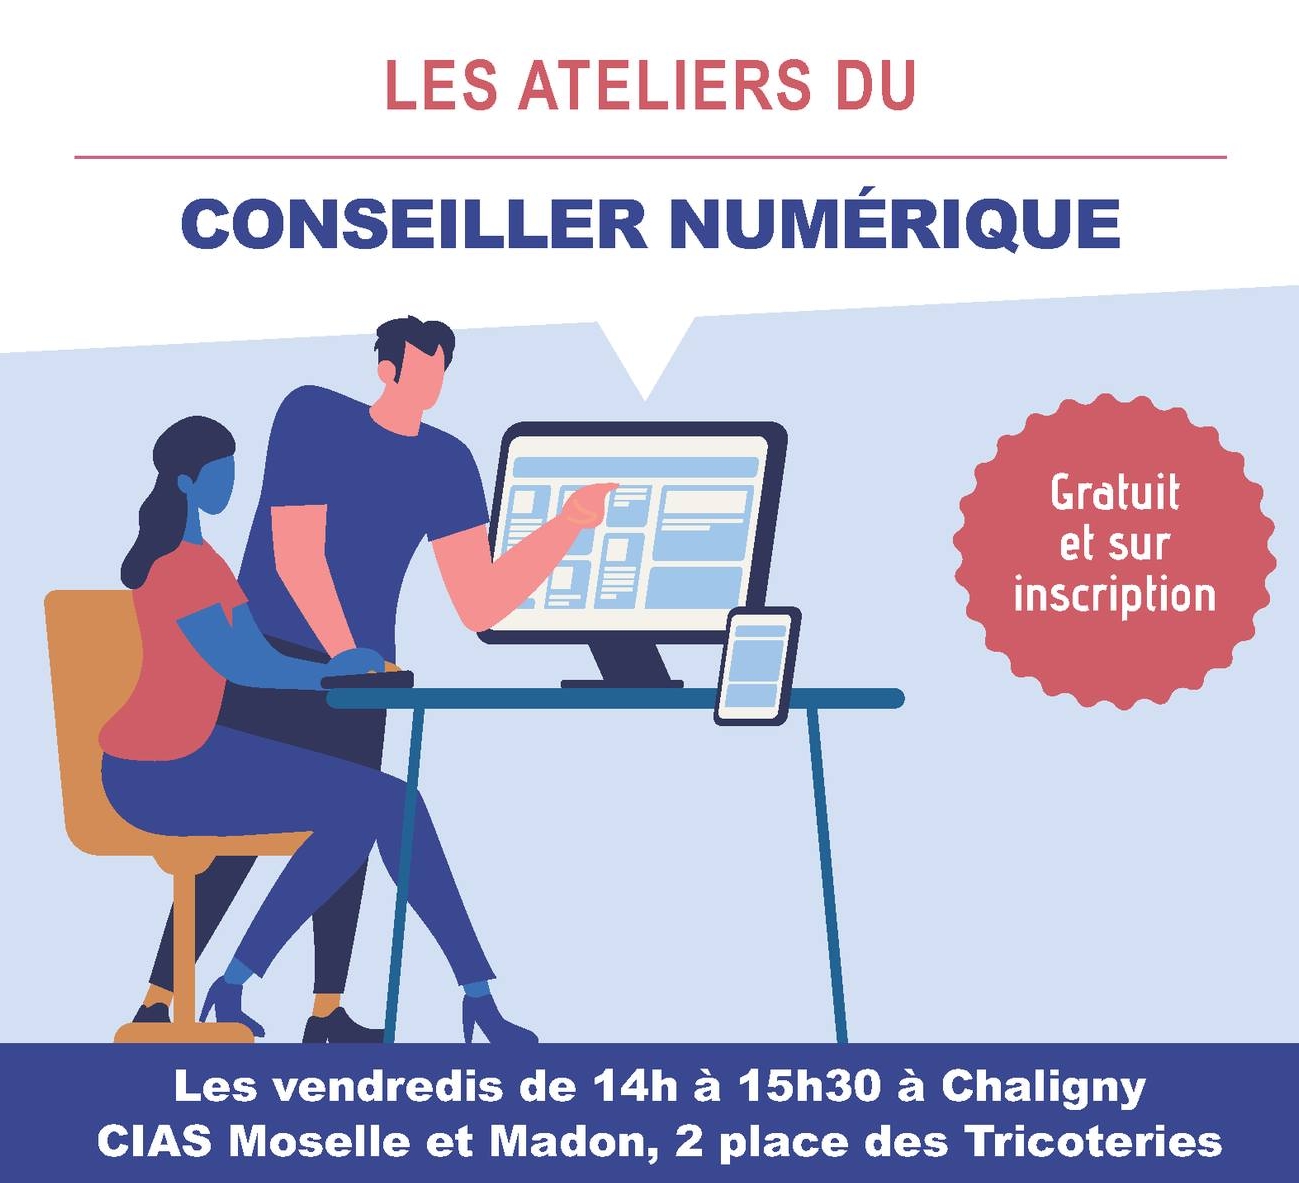 You are currently viewing Les ateliers du conseiller numérique !